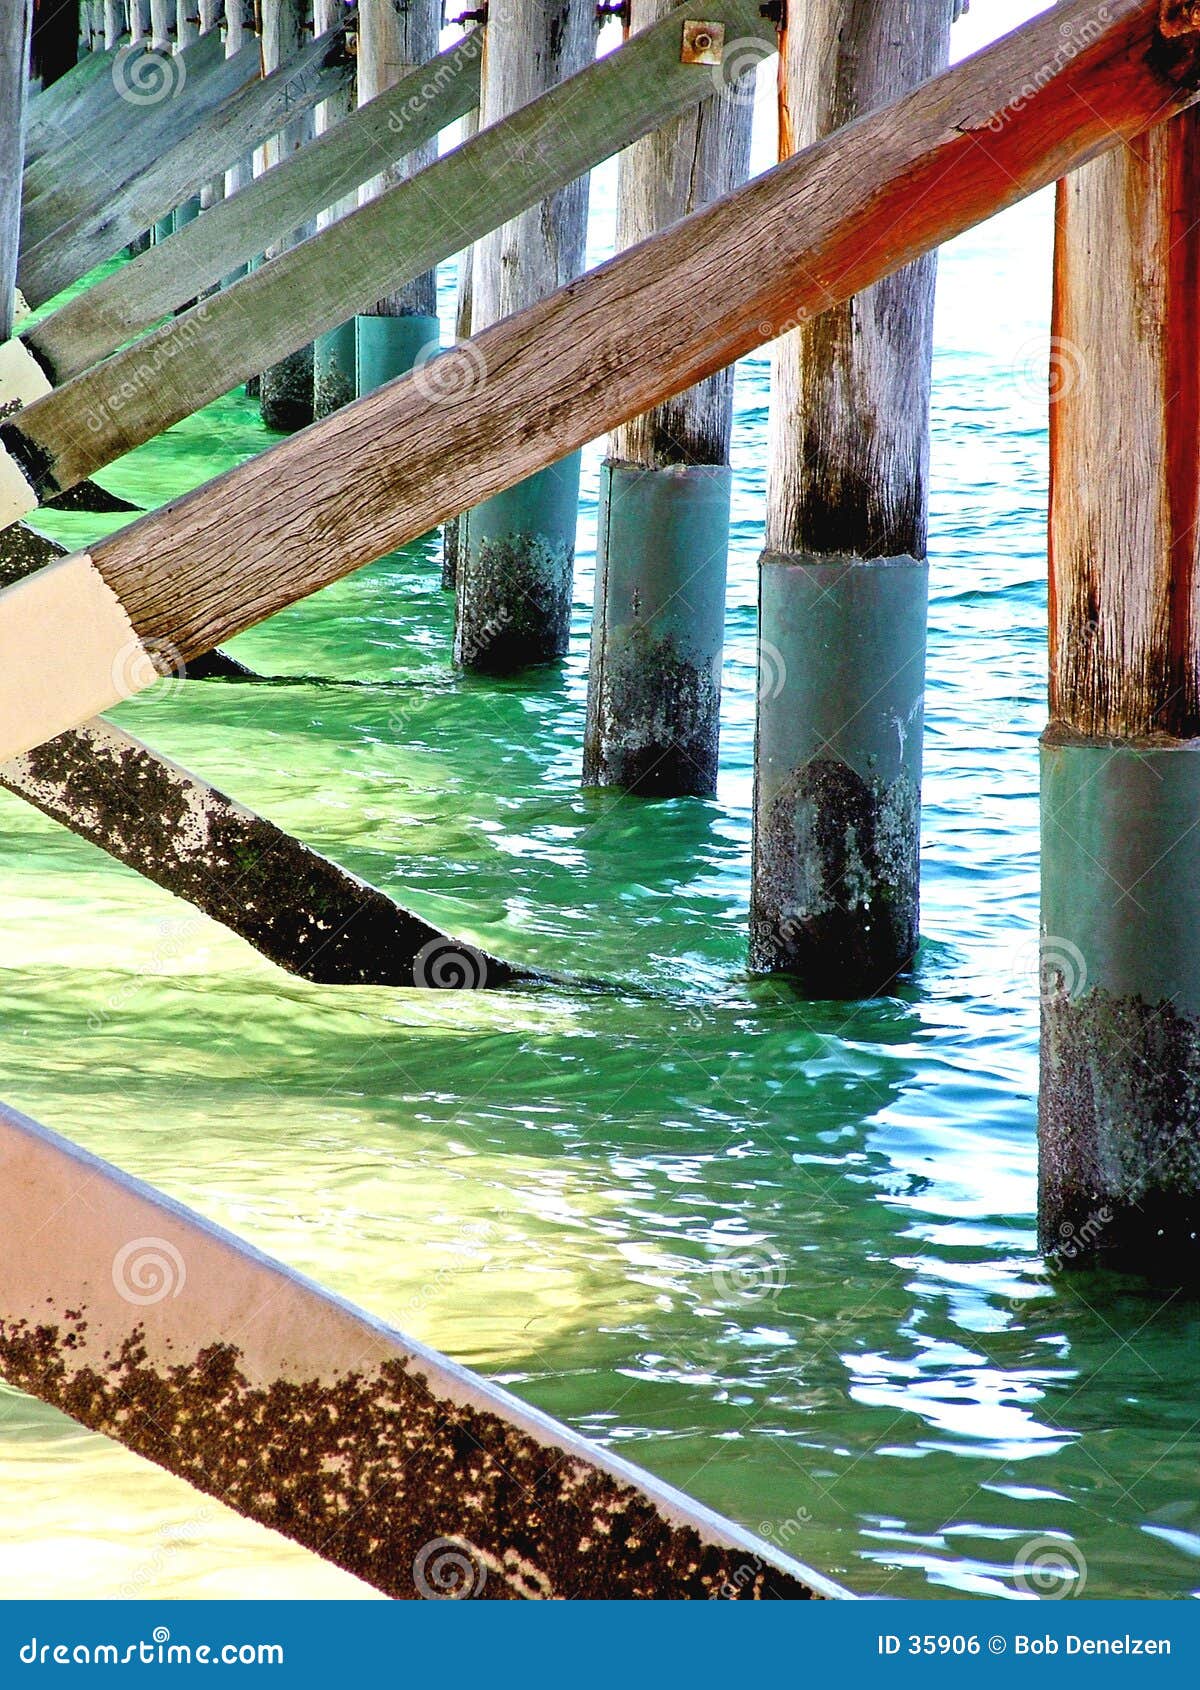 Agua en el embarcadero. El agua que fluye debajo del embarcadero en la bahía de Hervey, Queensland, Australia.